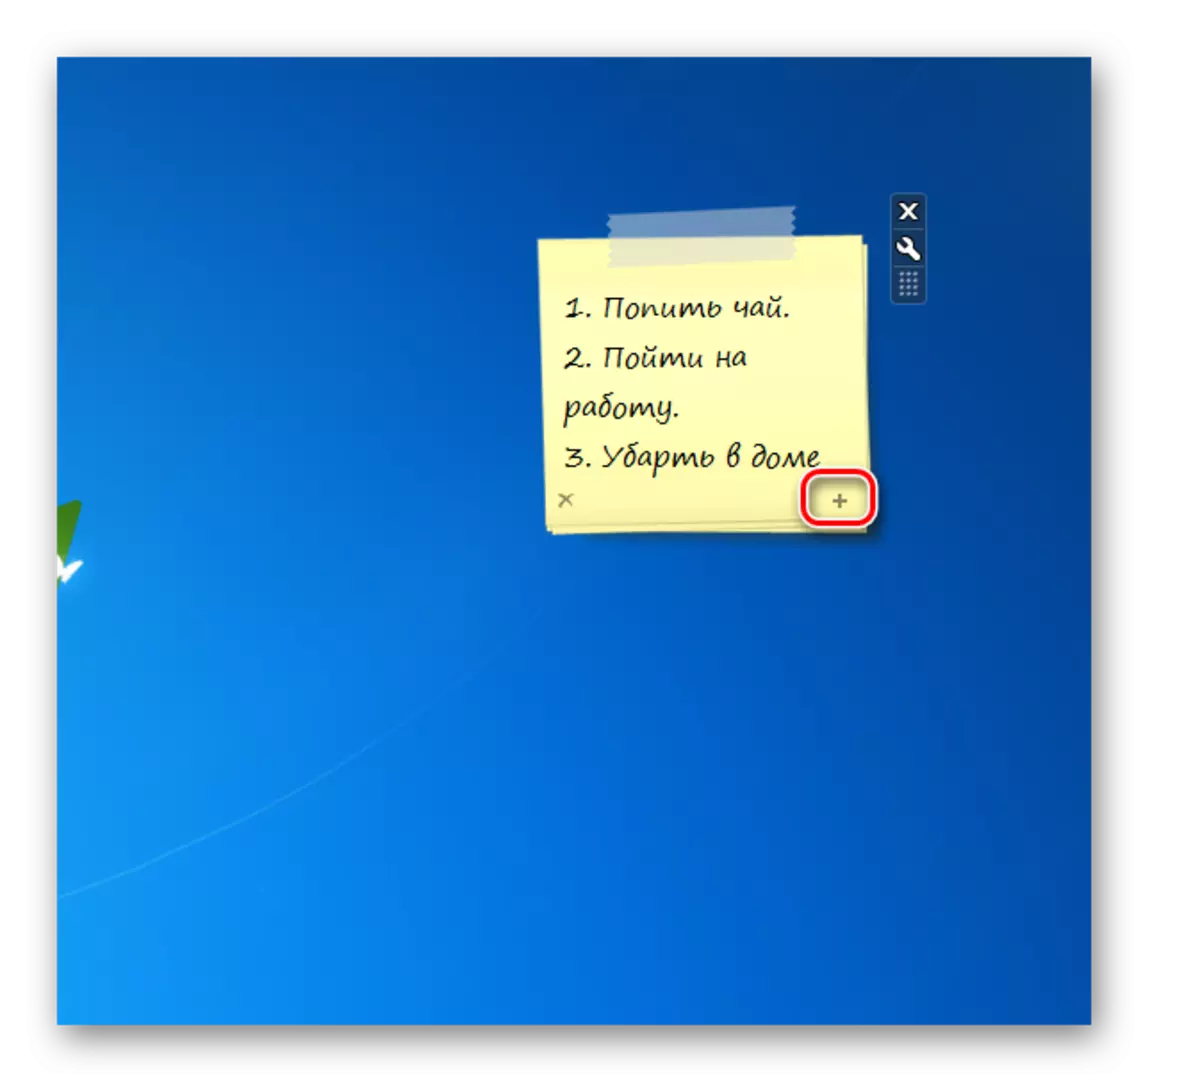 በ Windows 7 ውስጥ ዴስክቶፕ ላይ የሚለጠፍ መግበር በይነገጽ notescolour እስስት ውስጥ በሚቀጥለው ገጽ በመፍጠር ላይ